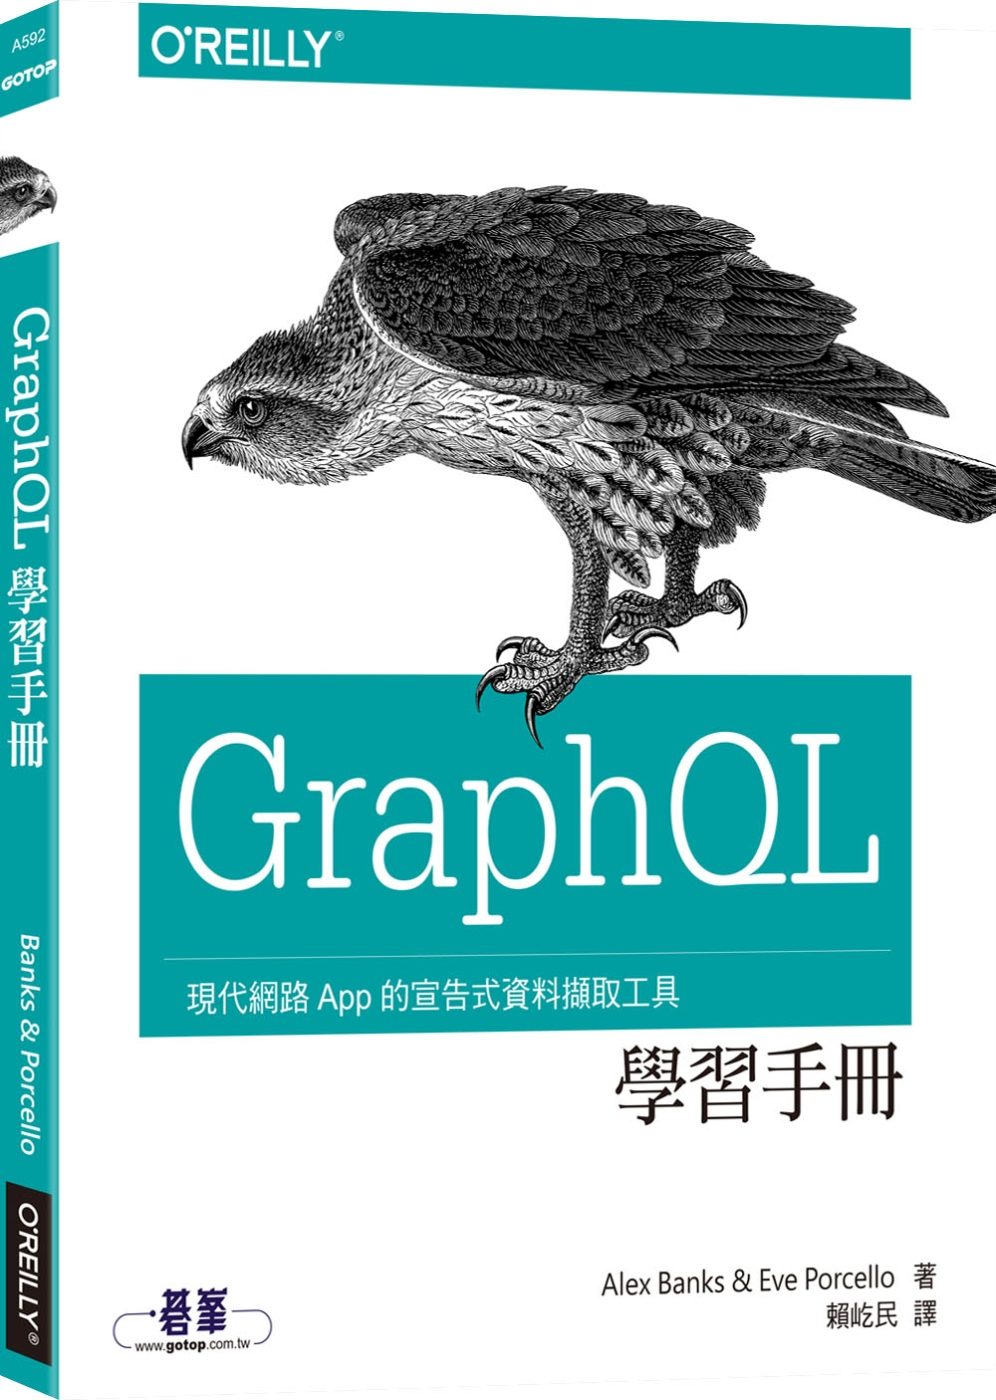 GraphQL學習手冊